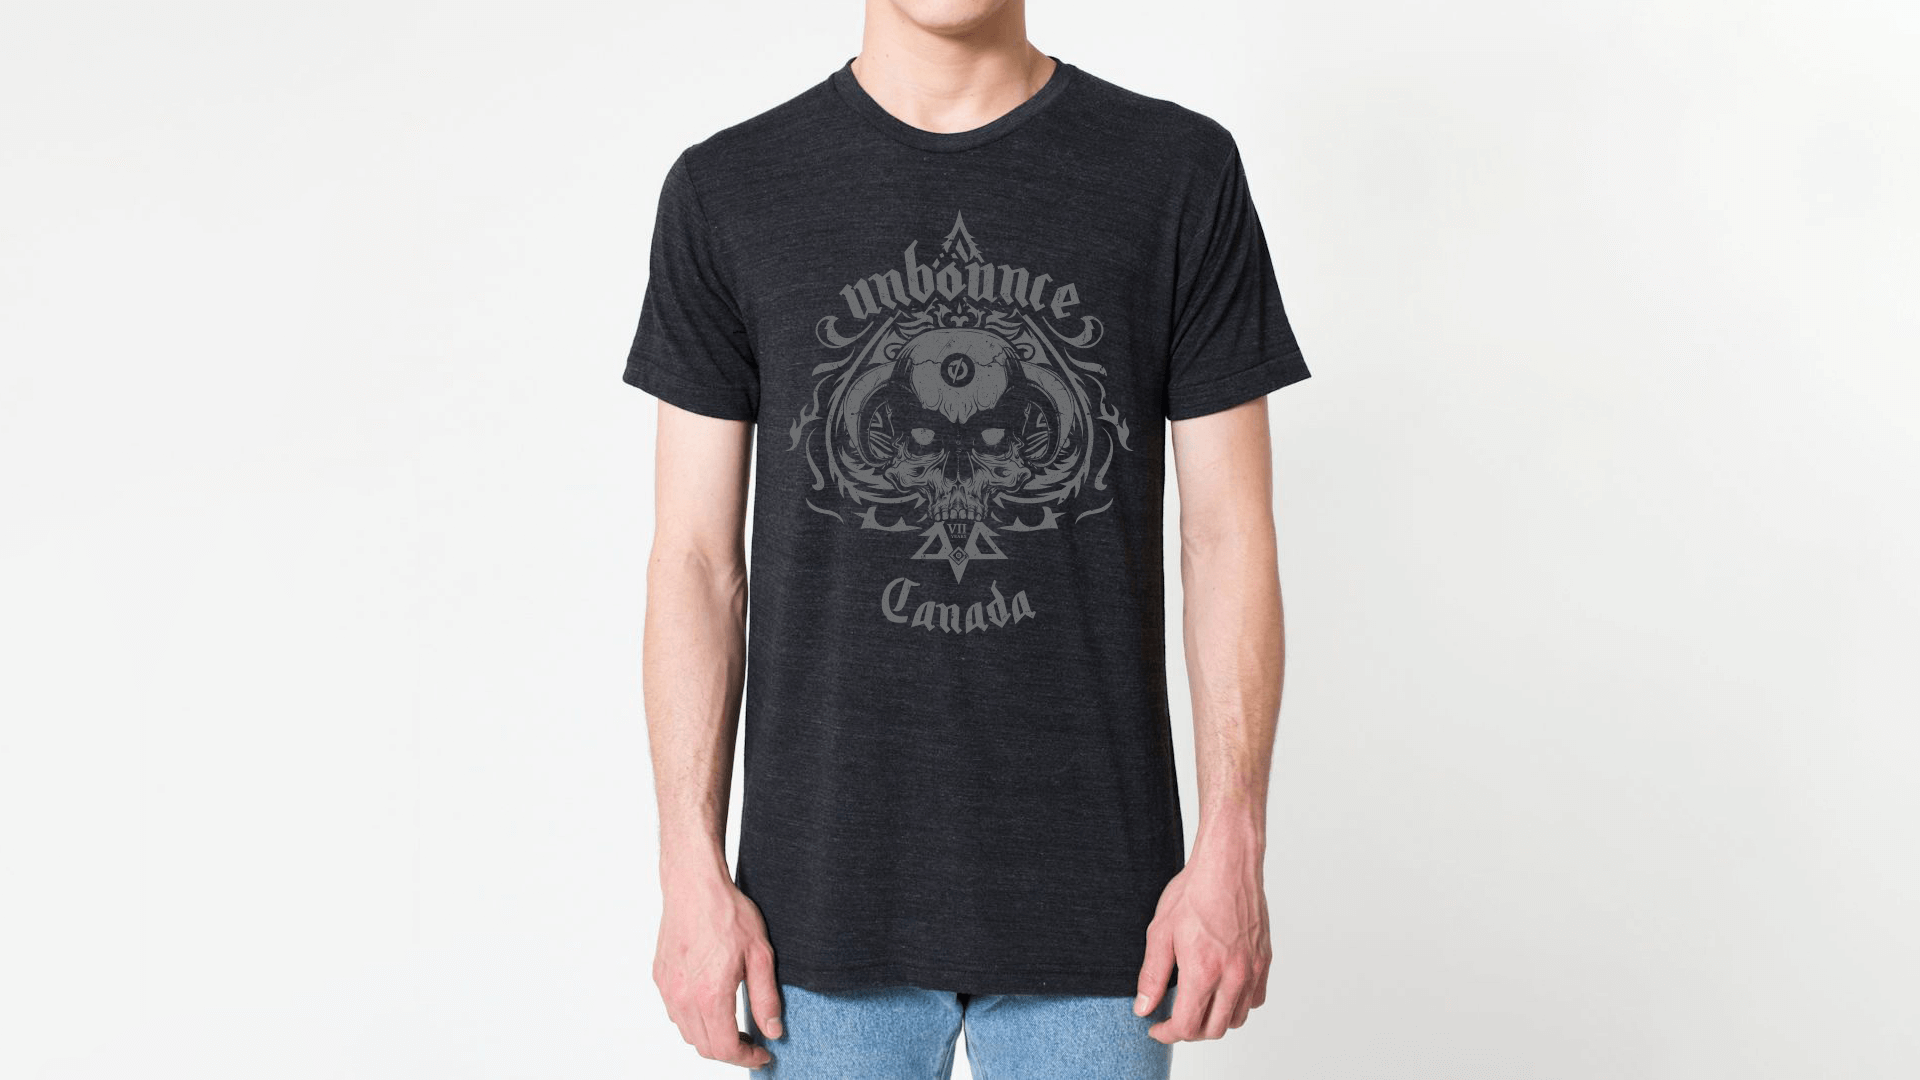 heysuho-unbounce-metal-shirt-monotone